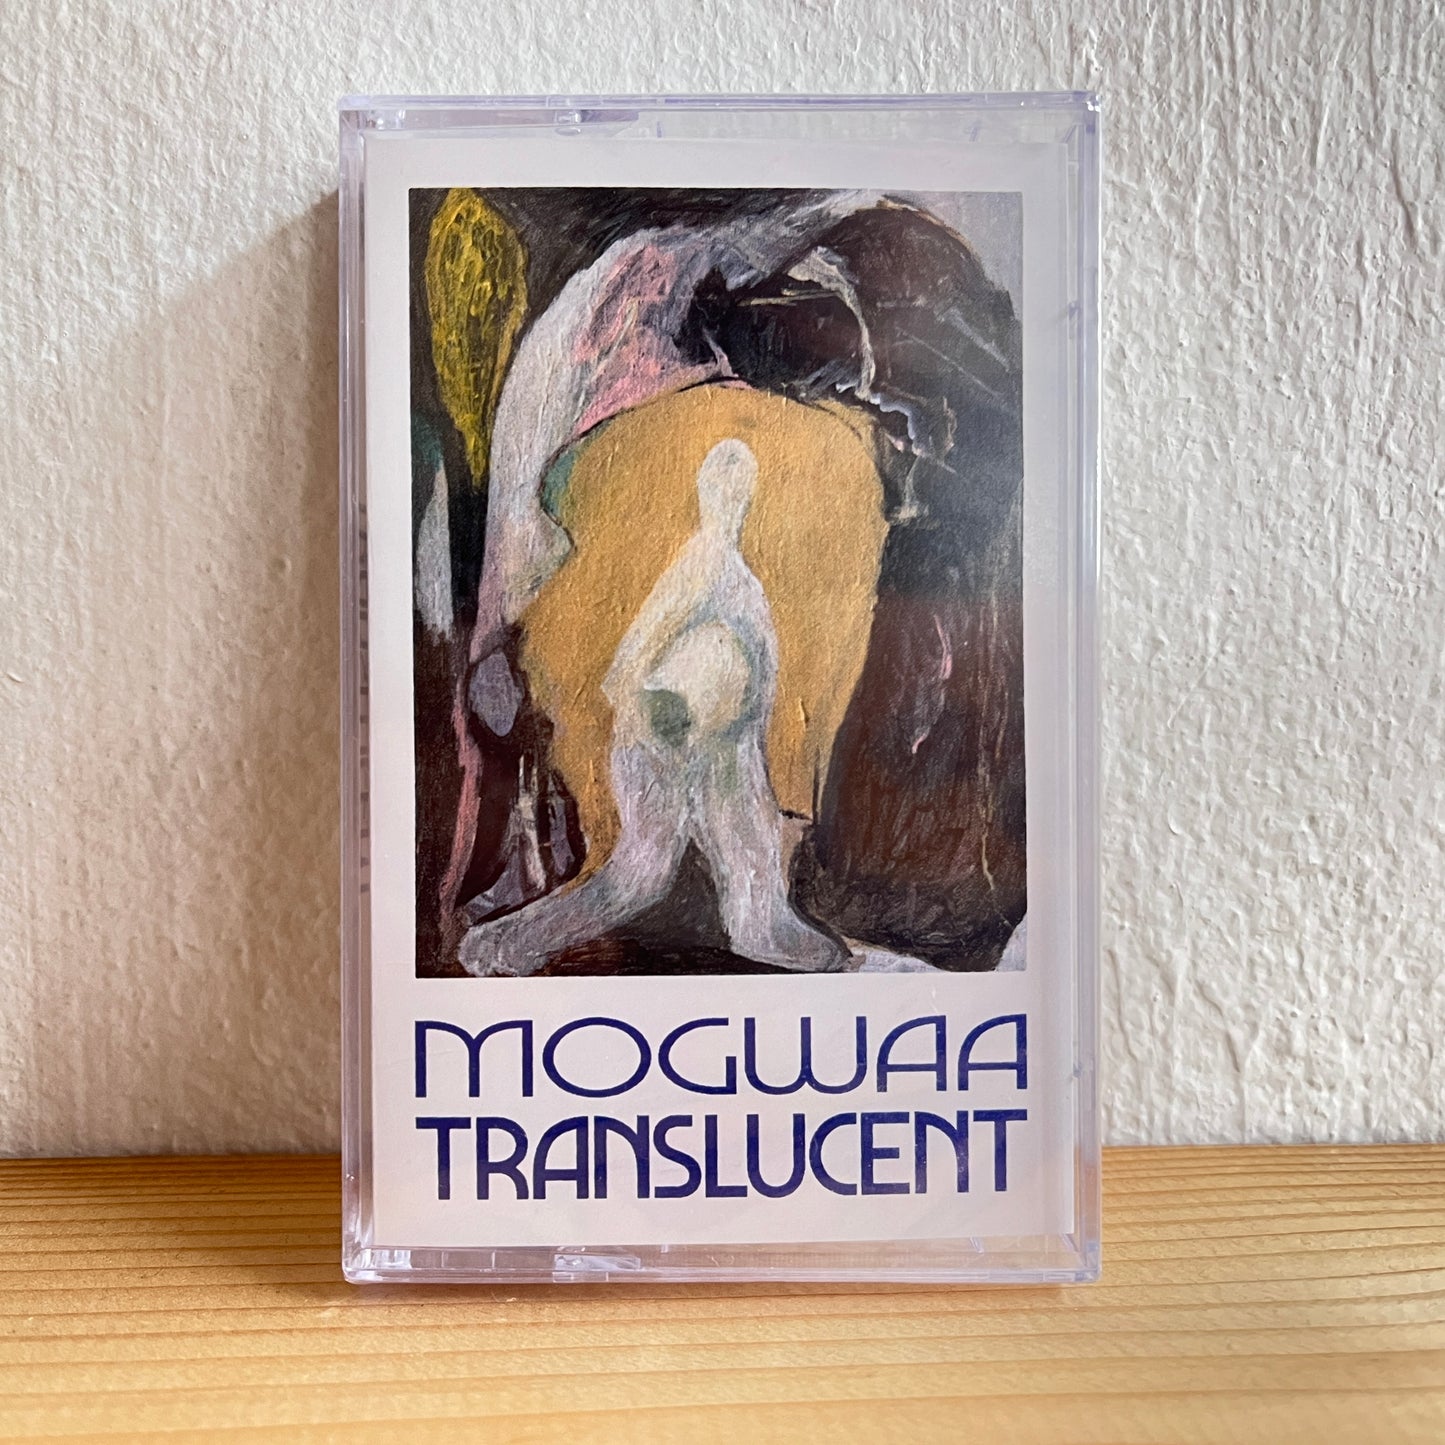 Mogwaa - Translucent (Cassette Tape)